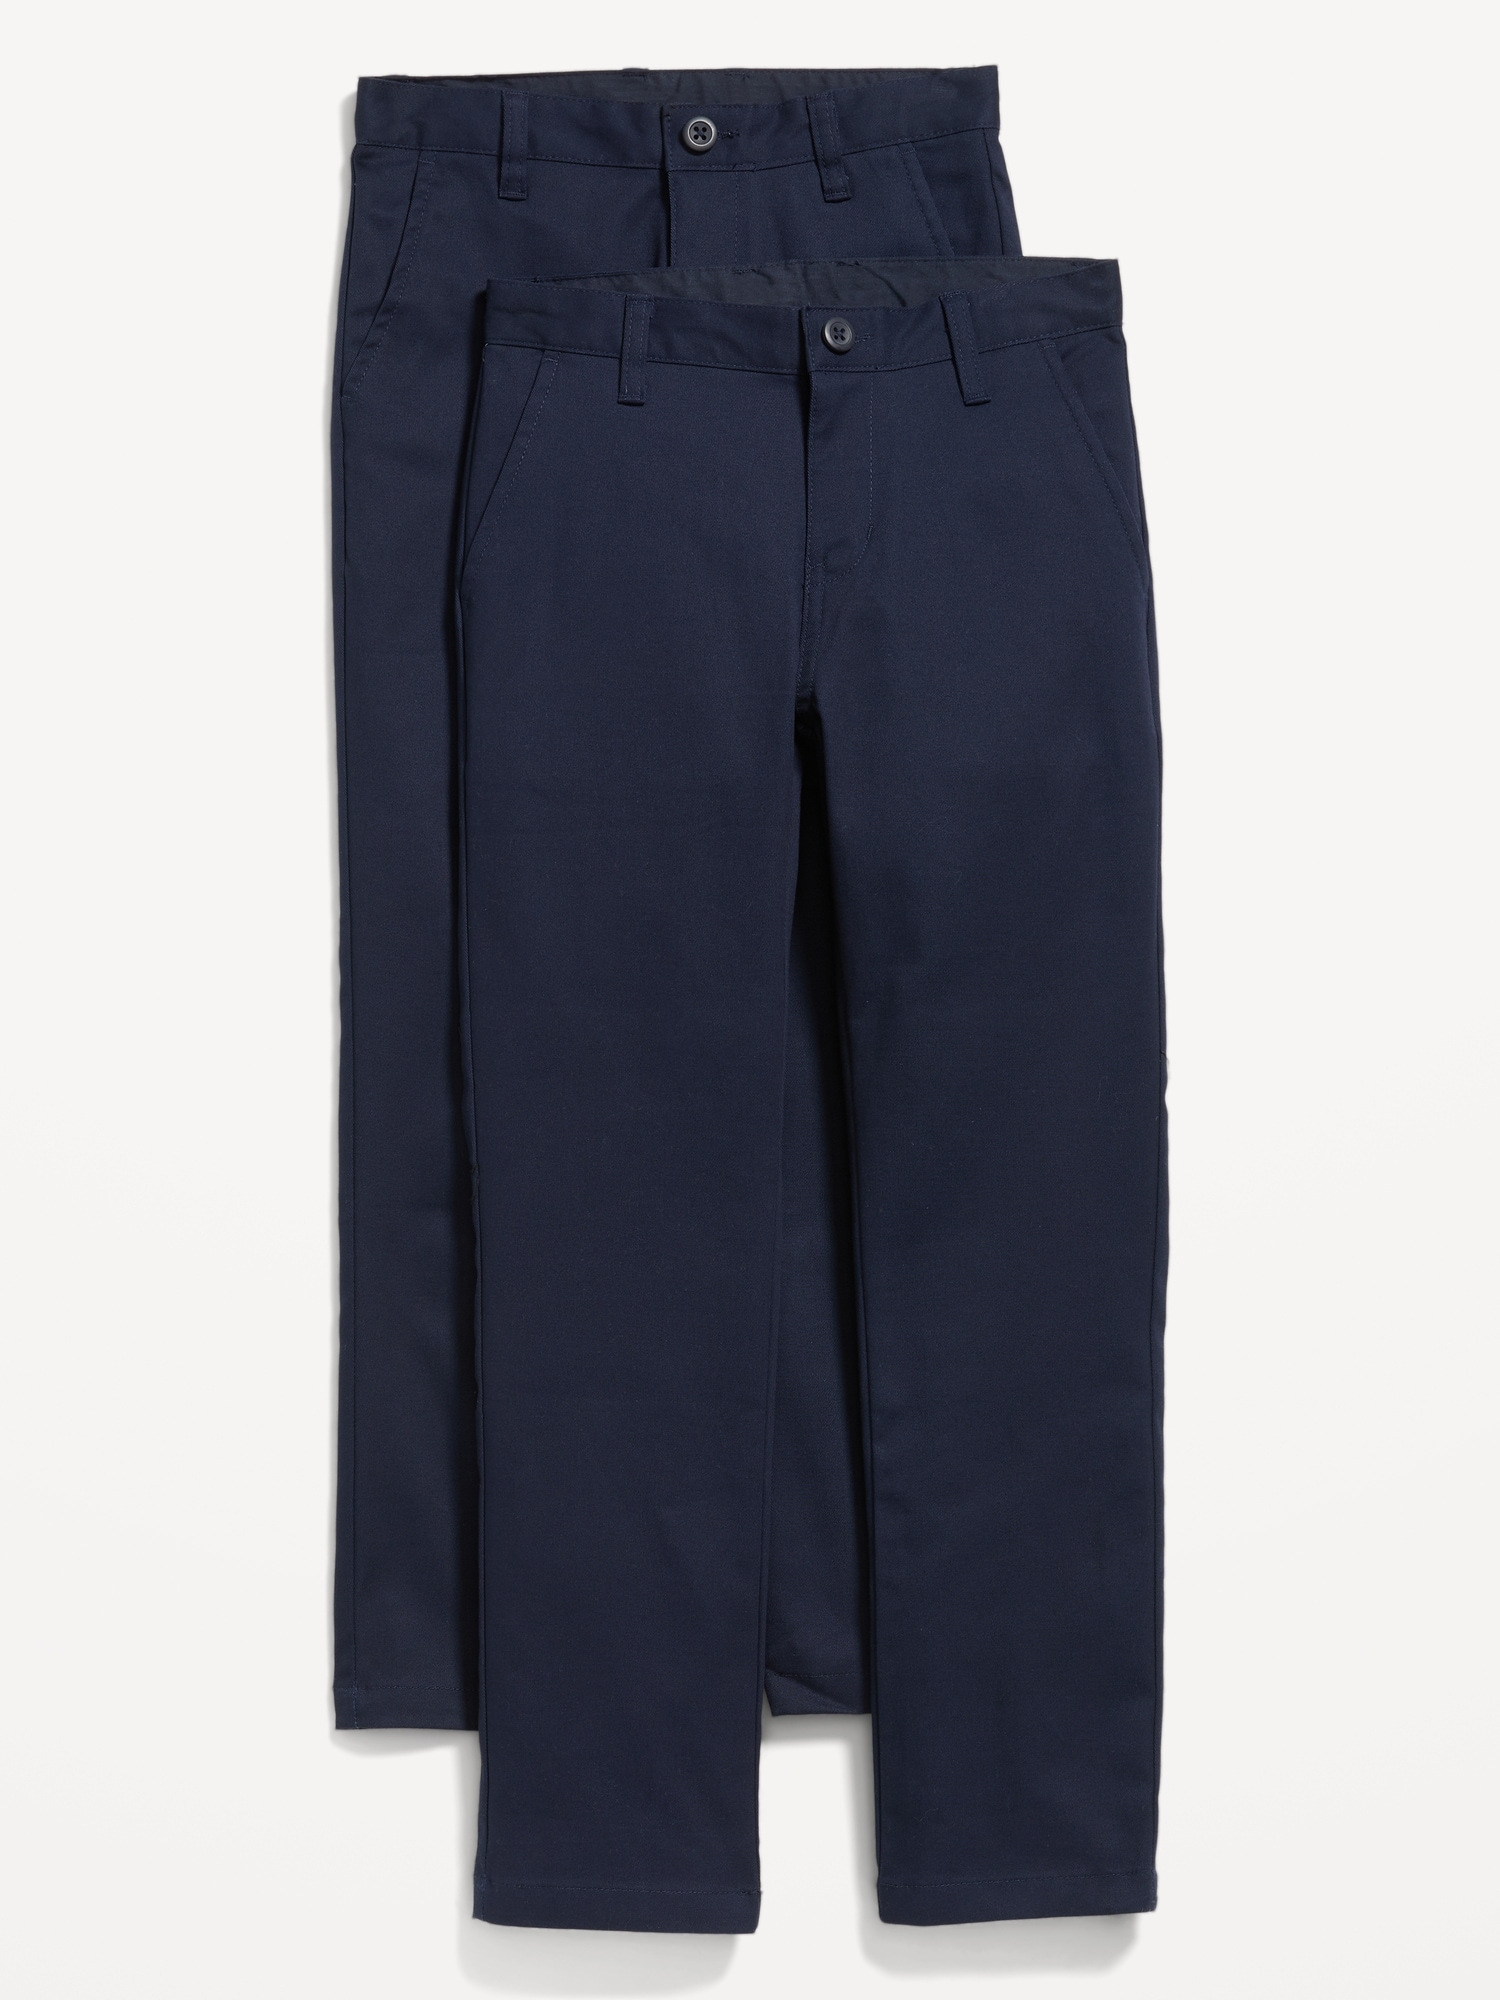 FR Uniform Pants | 46 - 60 Waist | 7oz. 100% Cotton | Navy – www.lapco.com